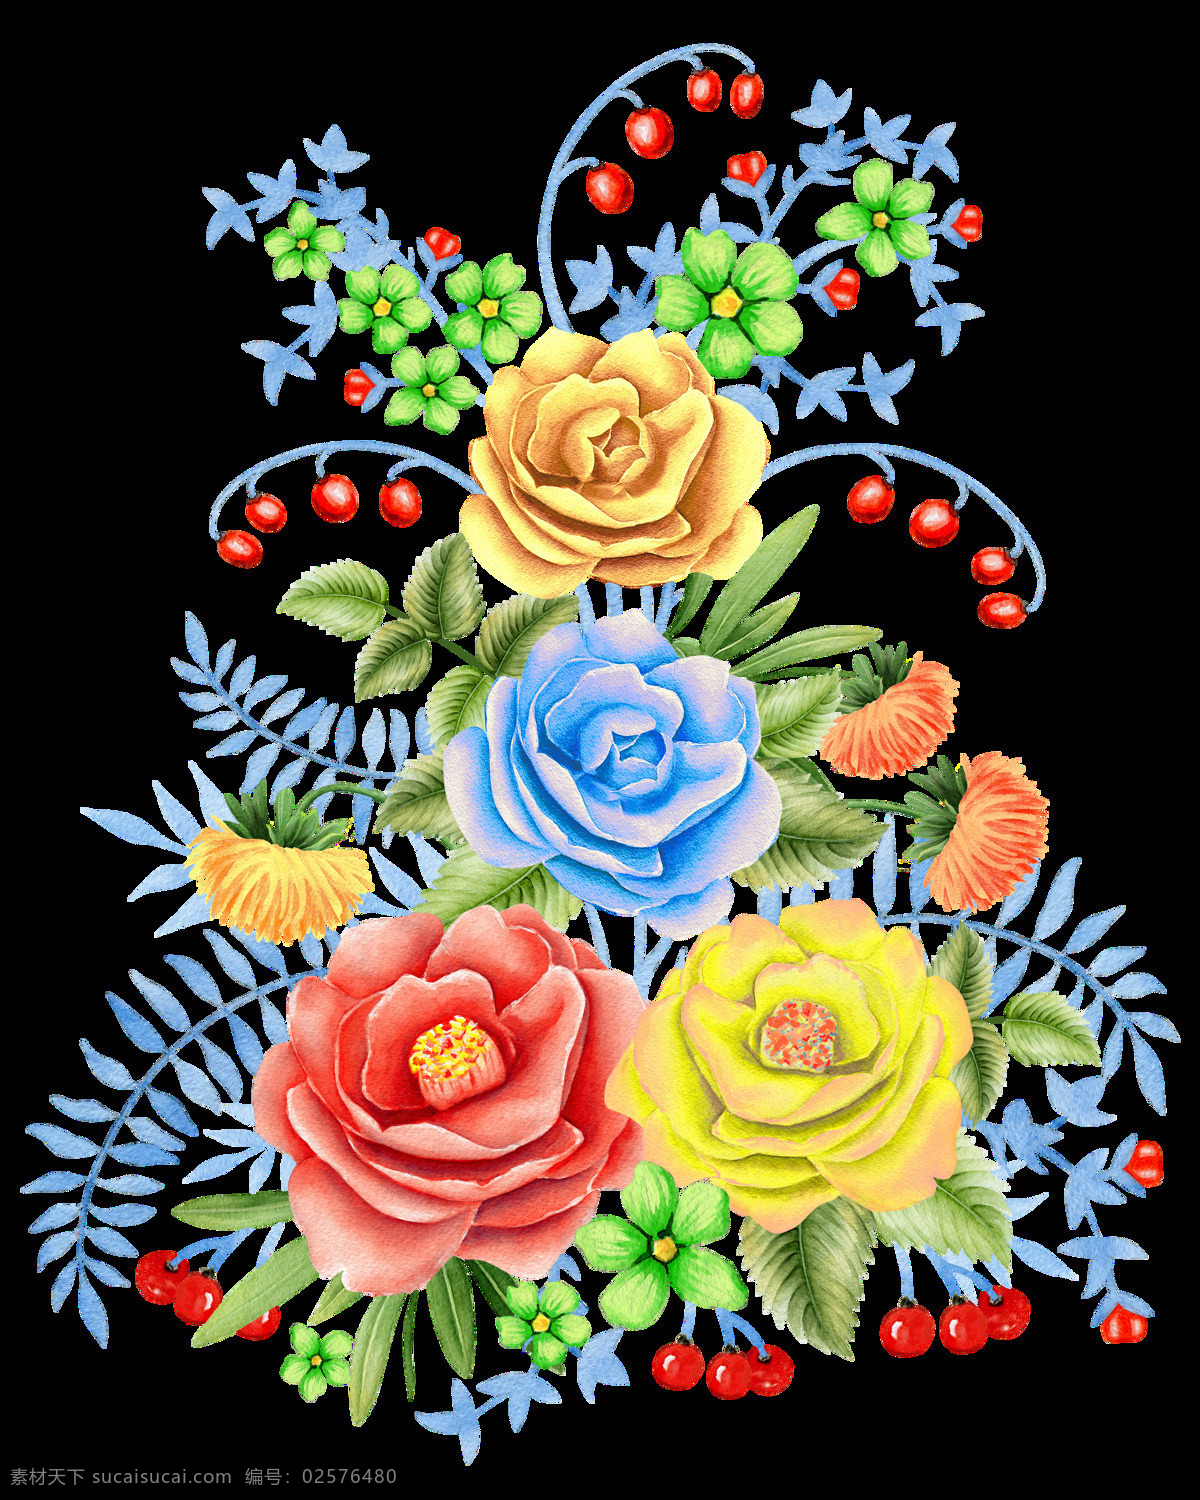 手绘 颜色 鲜艳 玫瑰花 透明 红色 蓝色 黄色 果子 绿色 透明素材 免扣素材 装饰图片